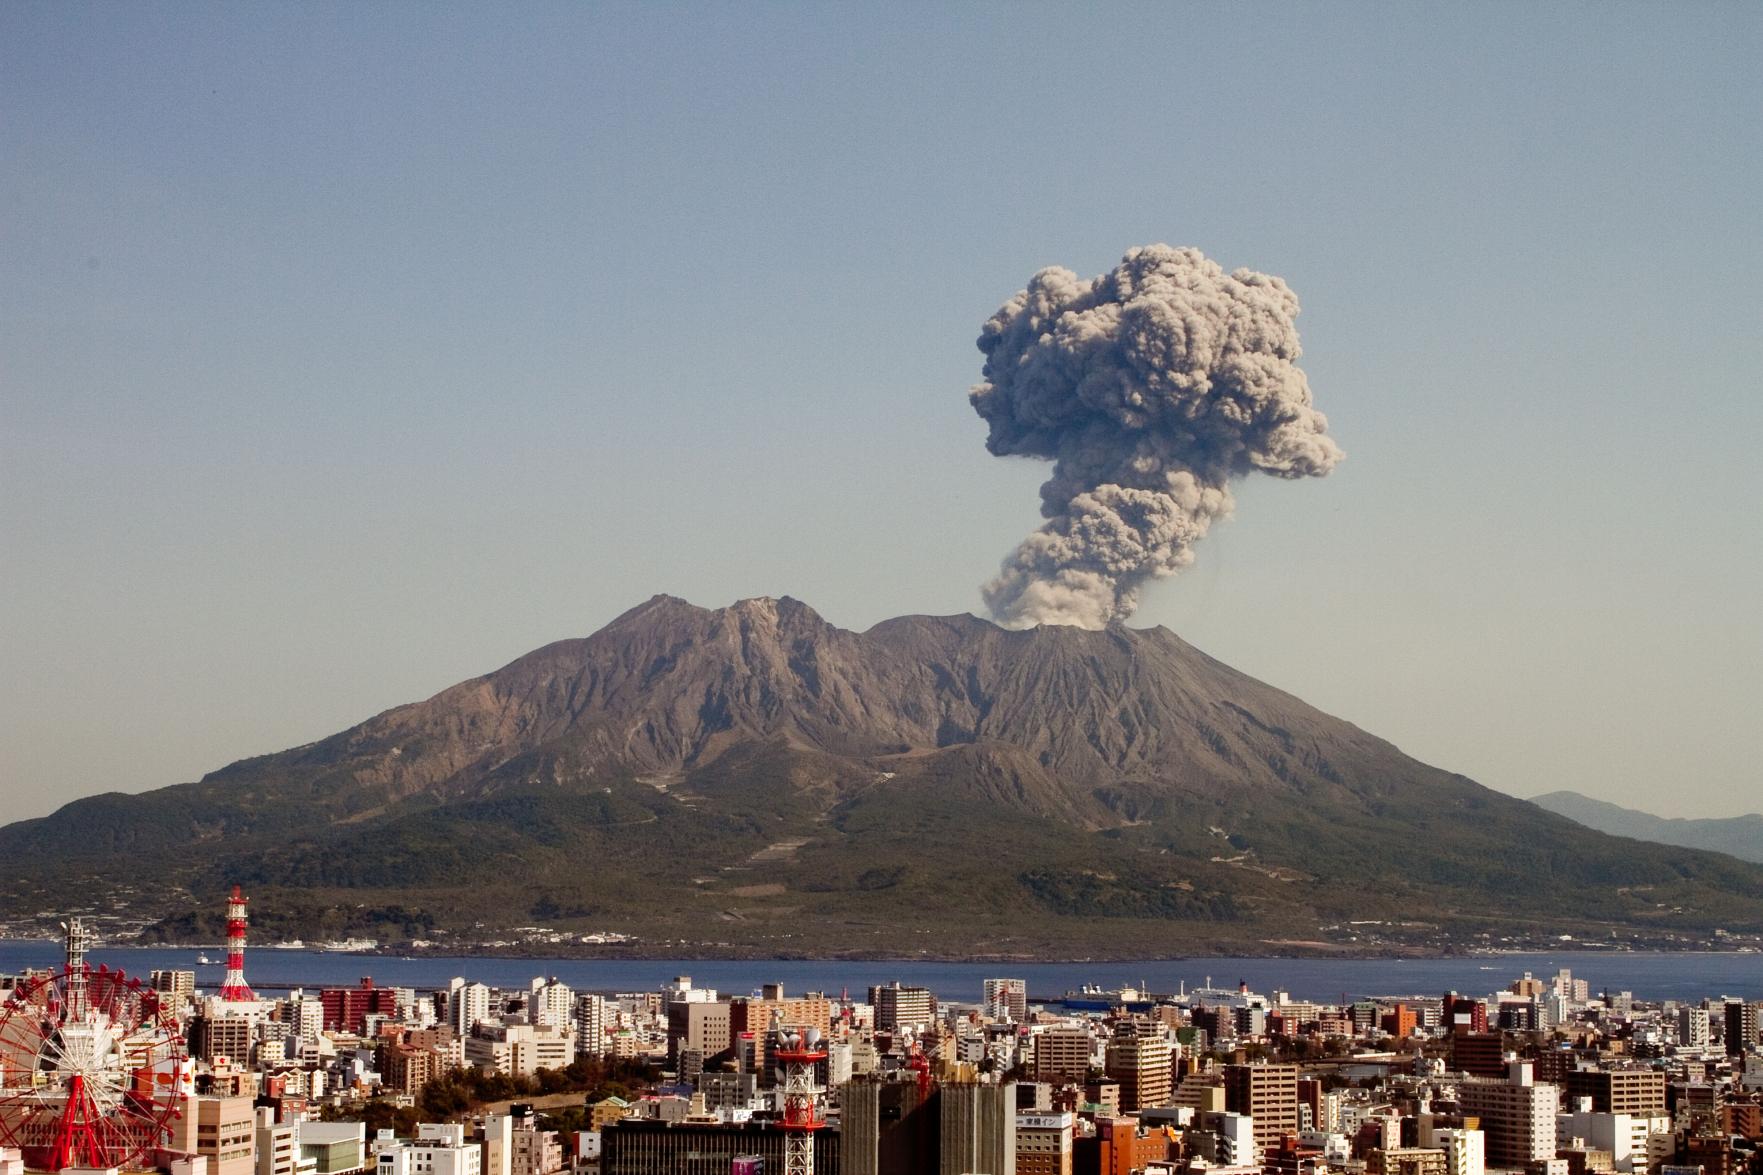 Núi lửa Sakurajima | Điểm tham quan | Trang web du lịch chính thức của tỉnh Kagoshima